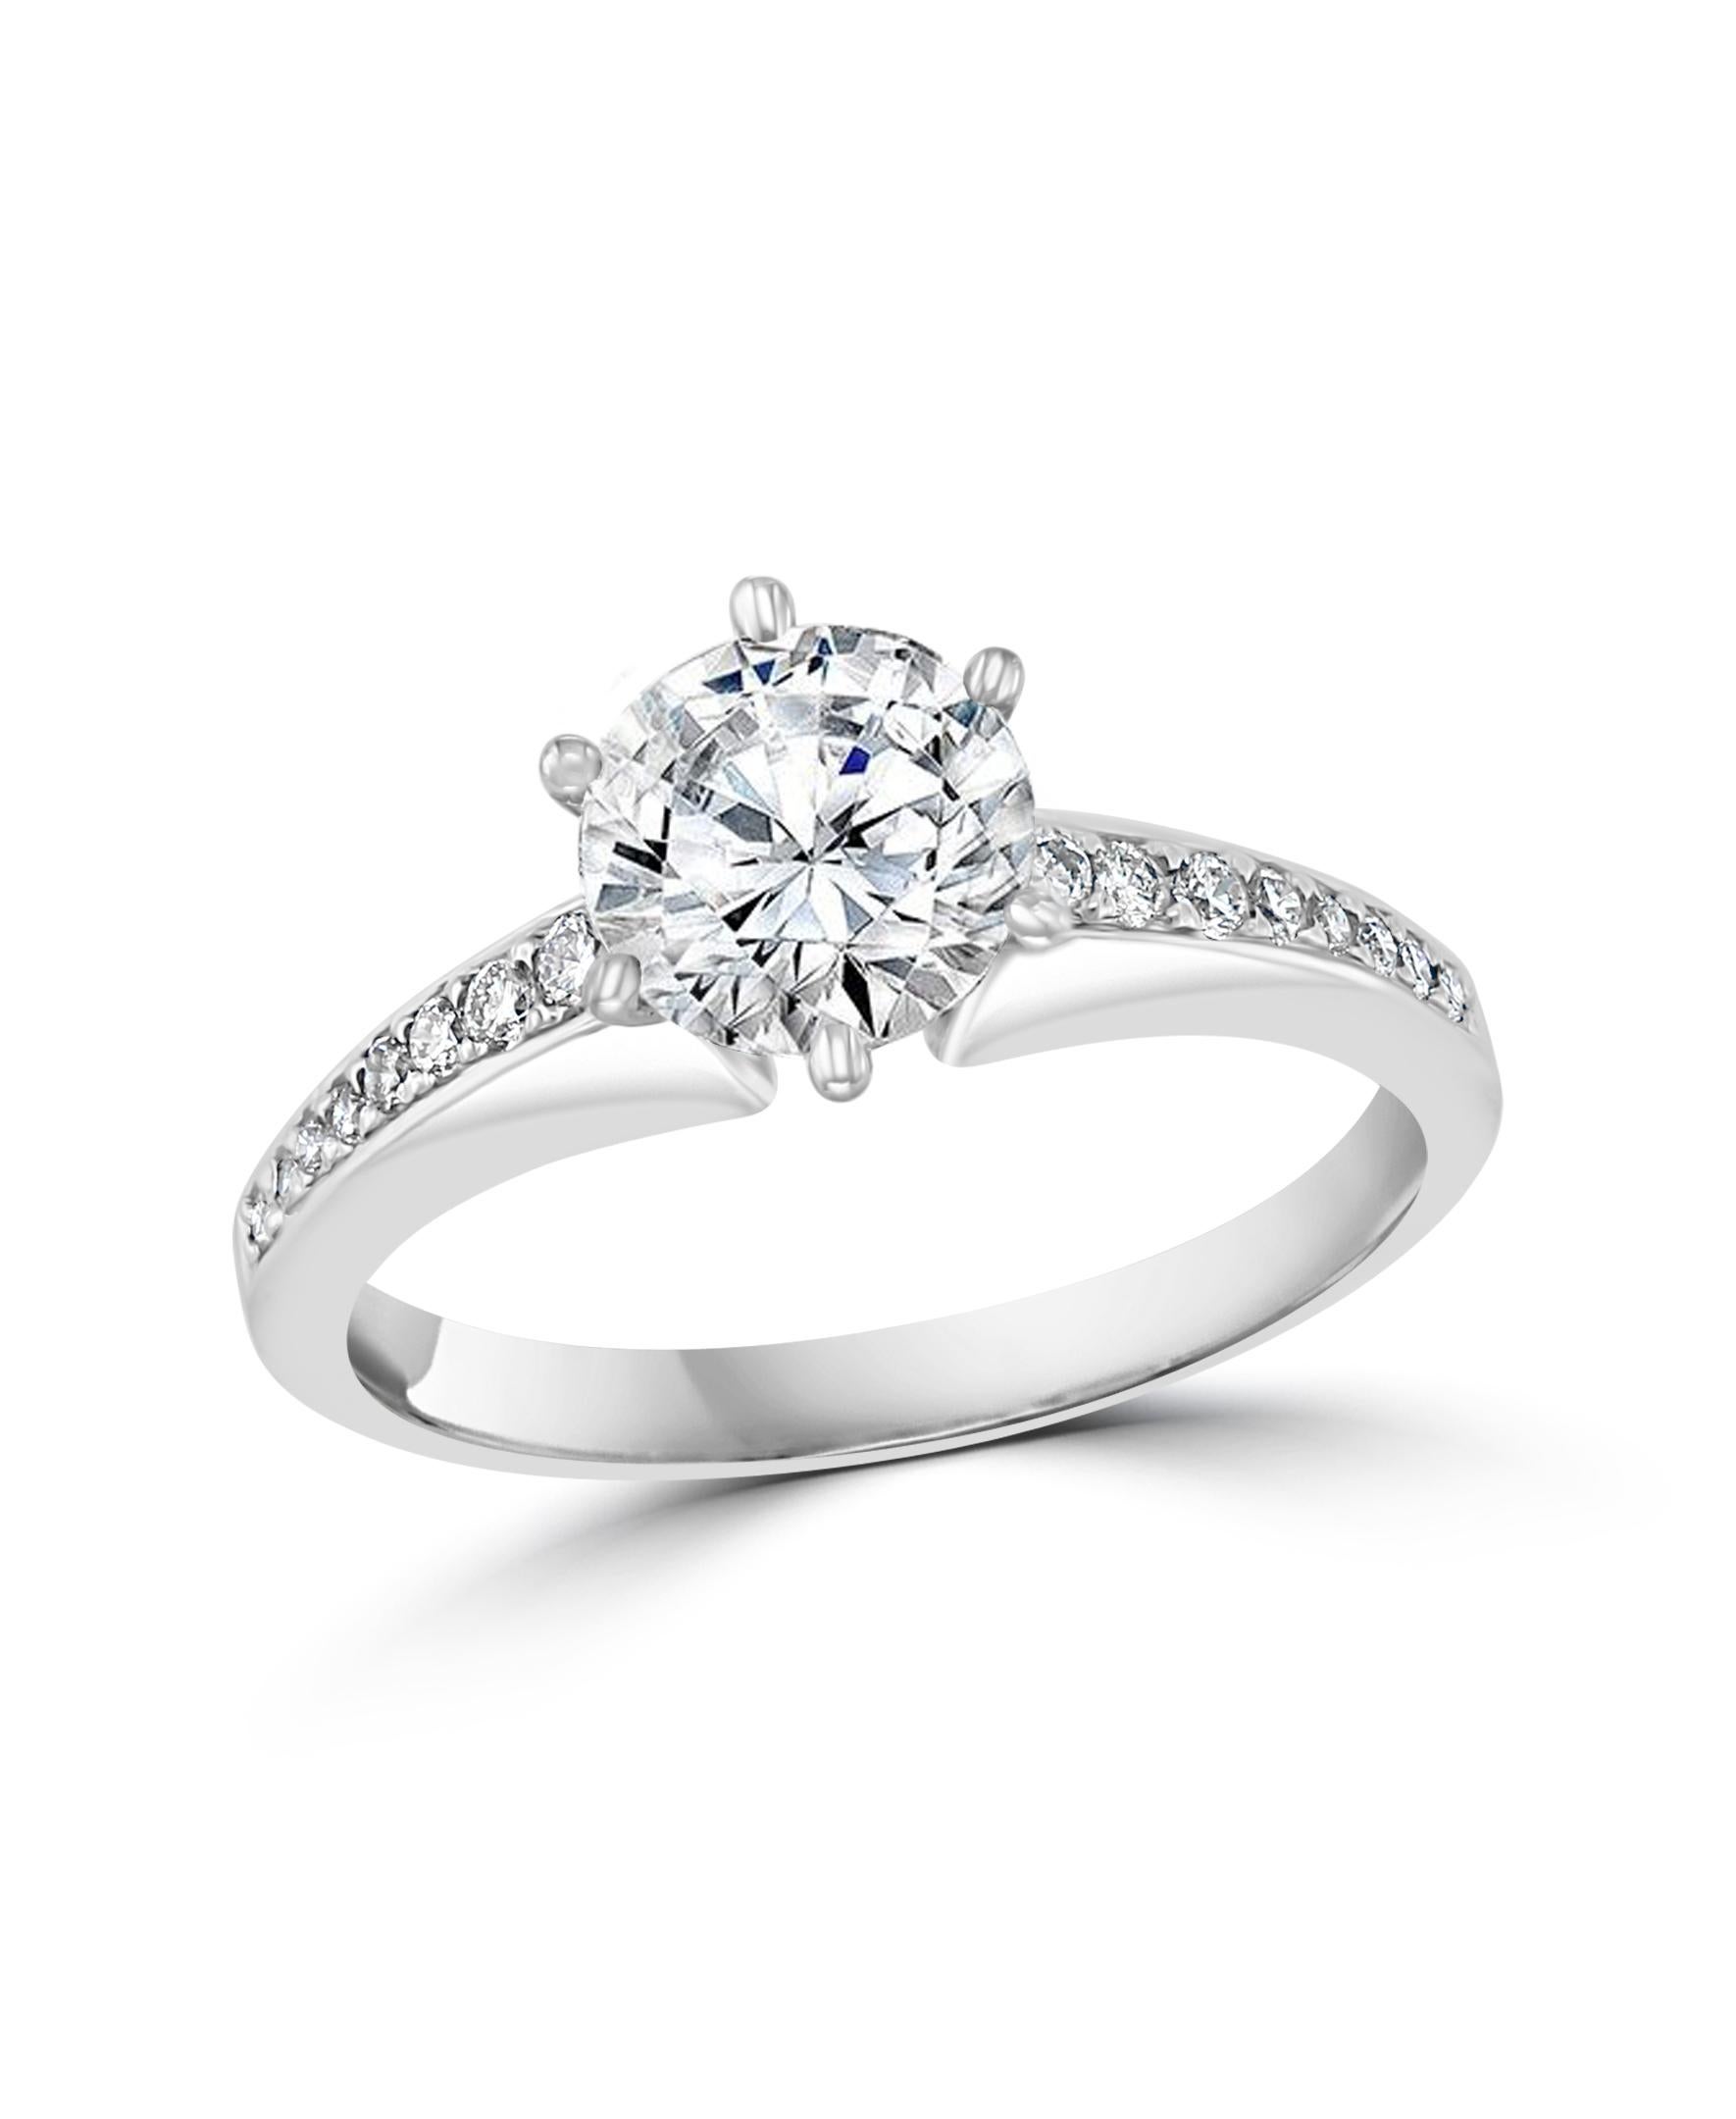 GIA zertifiziert, 1,01 Ct VS2, E  Runder Brillant Diamant Verlobung Platin  Ring
GIA-Zertifikat Nr. 14199580
Abmessungen 6.33-640x3.98
Zarter und klassischer Ring
Platin 3 Gramm
Diamant VS 2 Qualität und E Farbe.
Es gibt  weitere Diamanten im